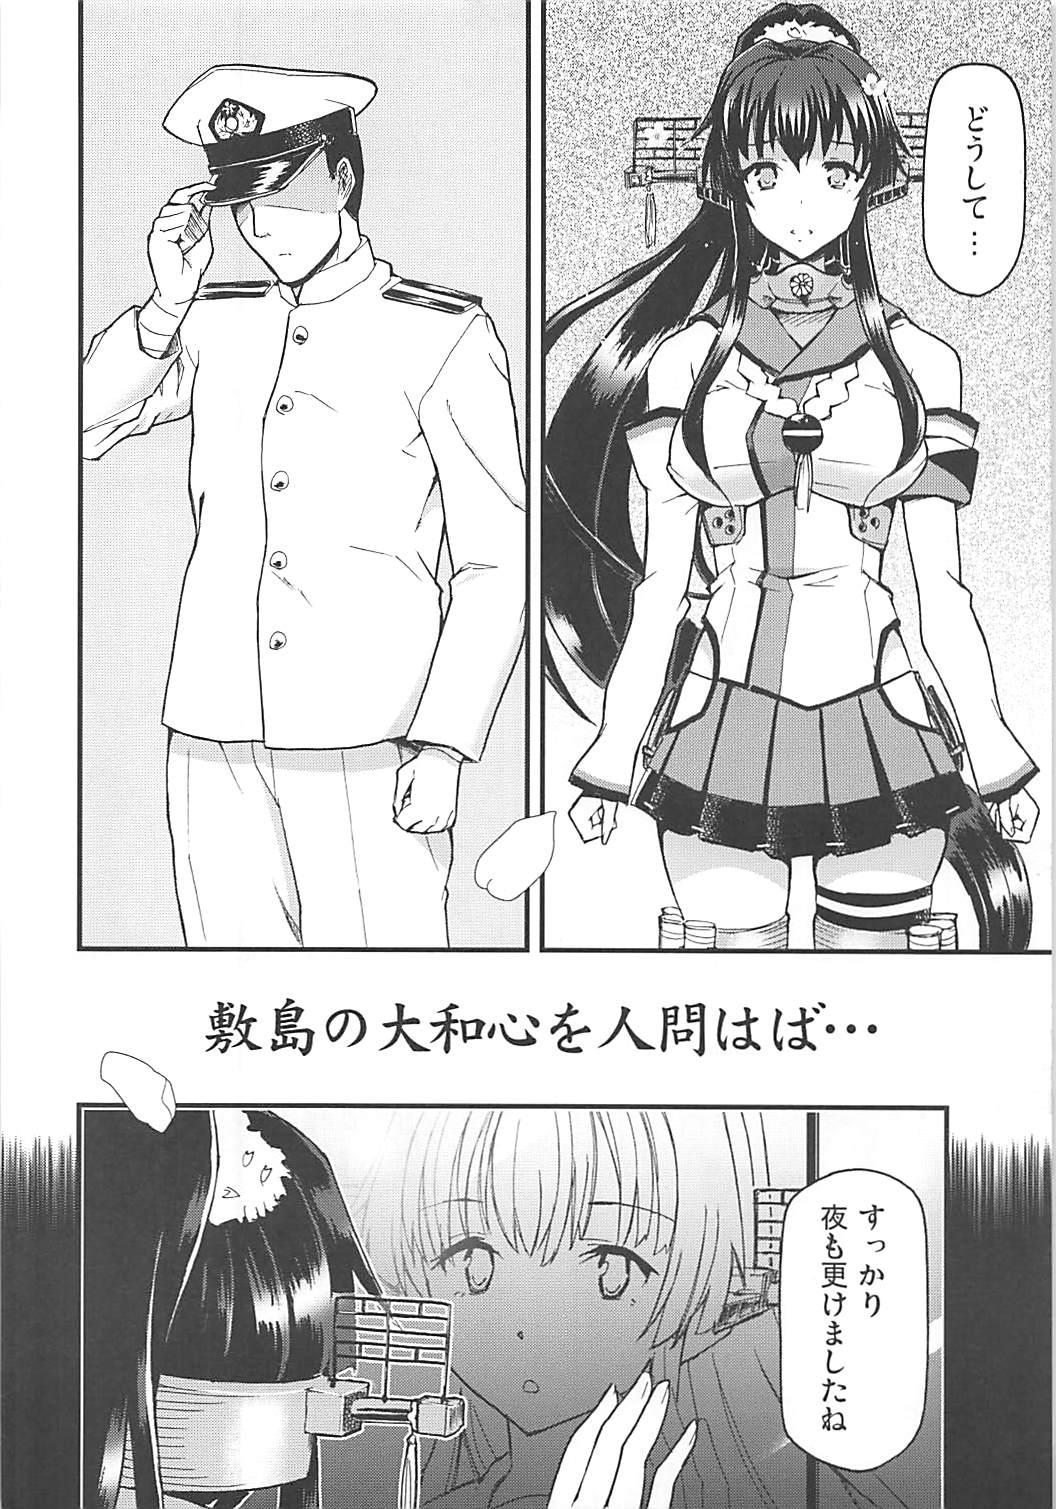 Exgirlfriend Shikishima no Yamato-gokoro o Hito Towaba... - Kantai collection Alternative - Page 3